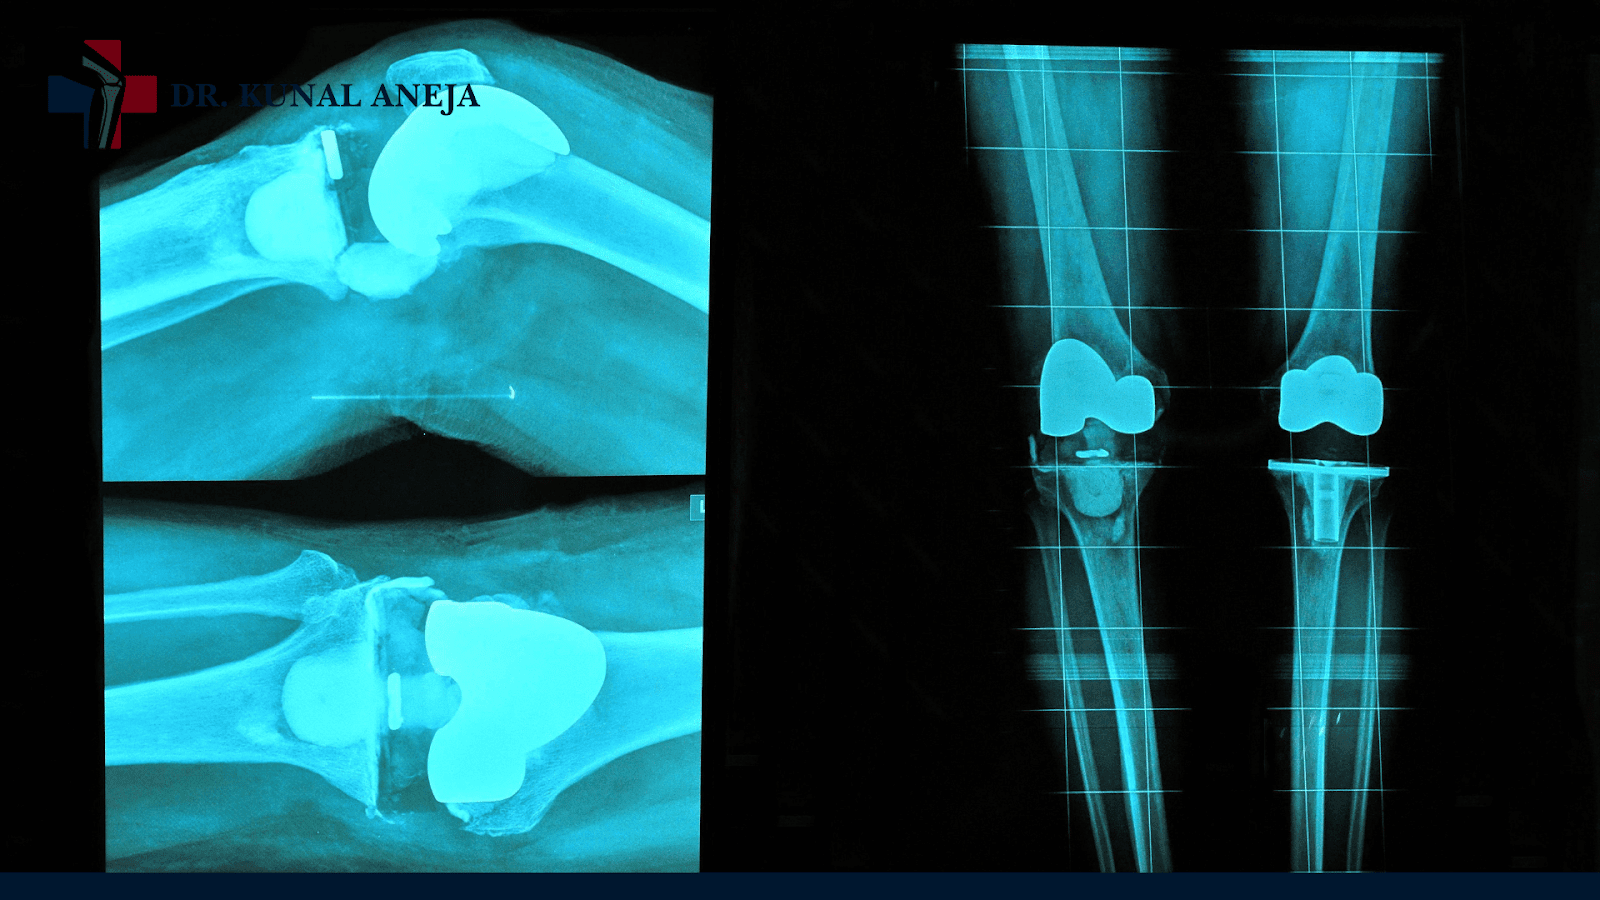 knee replacement surgeon in delhi
